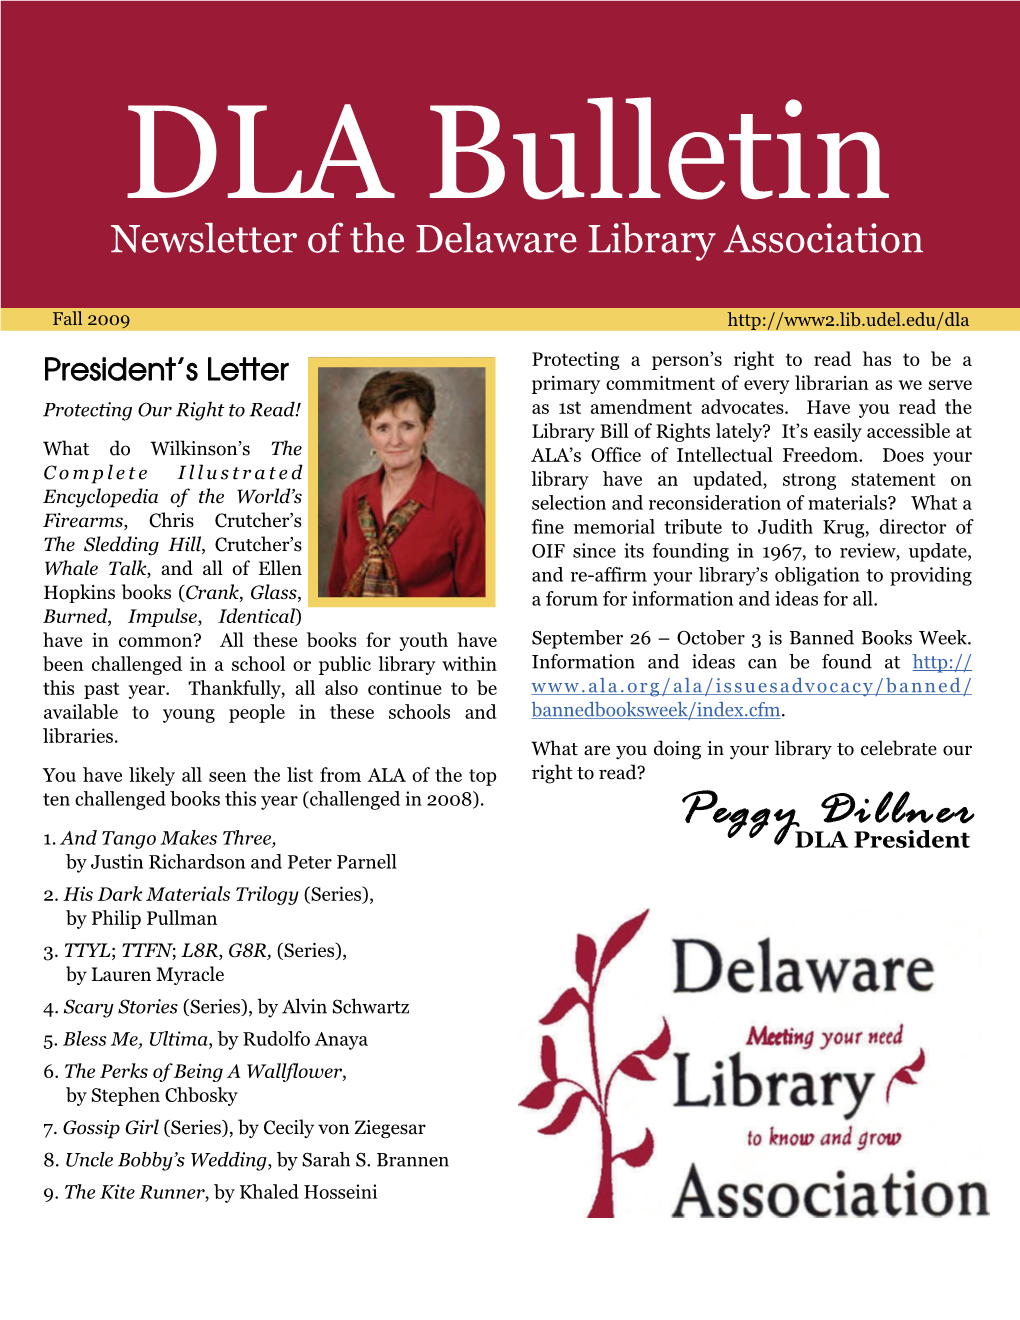 Peggy Dillner, President Education Resource Center, U of Delaware Mpd@Udel.Edu